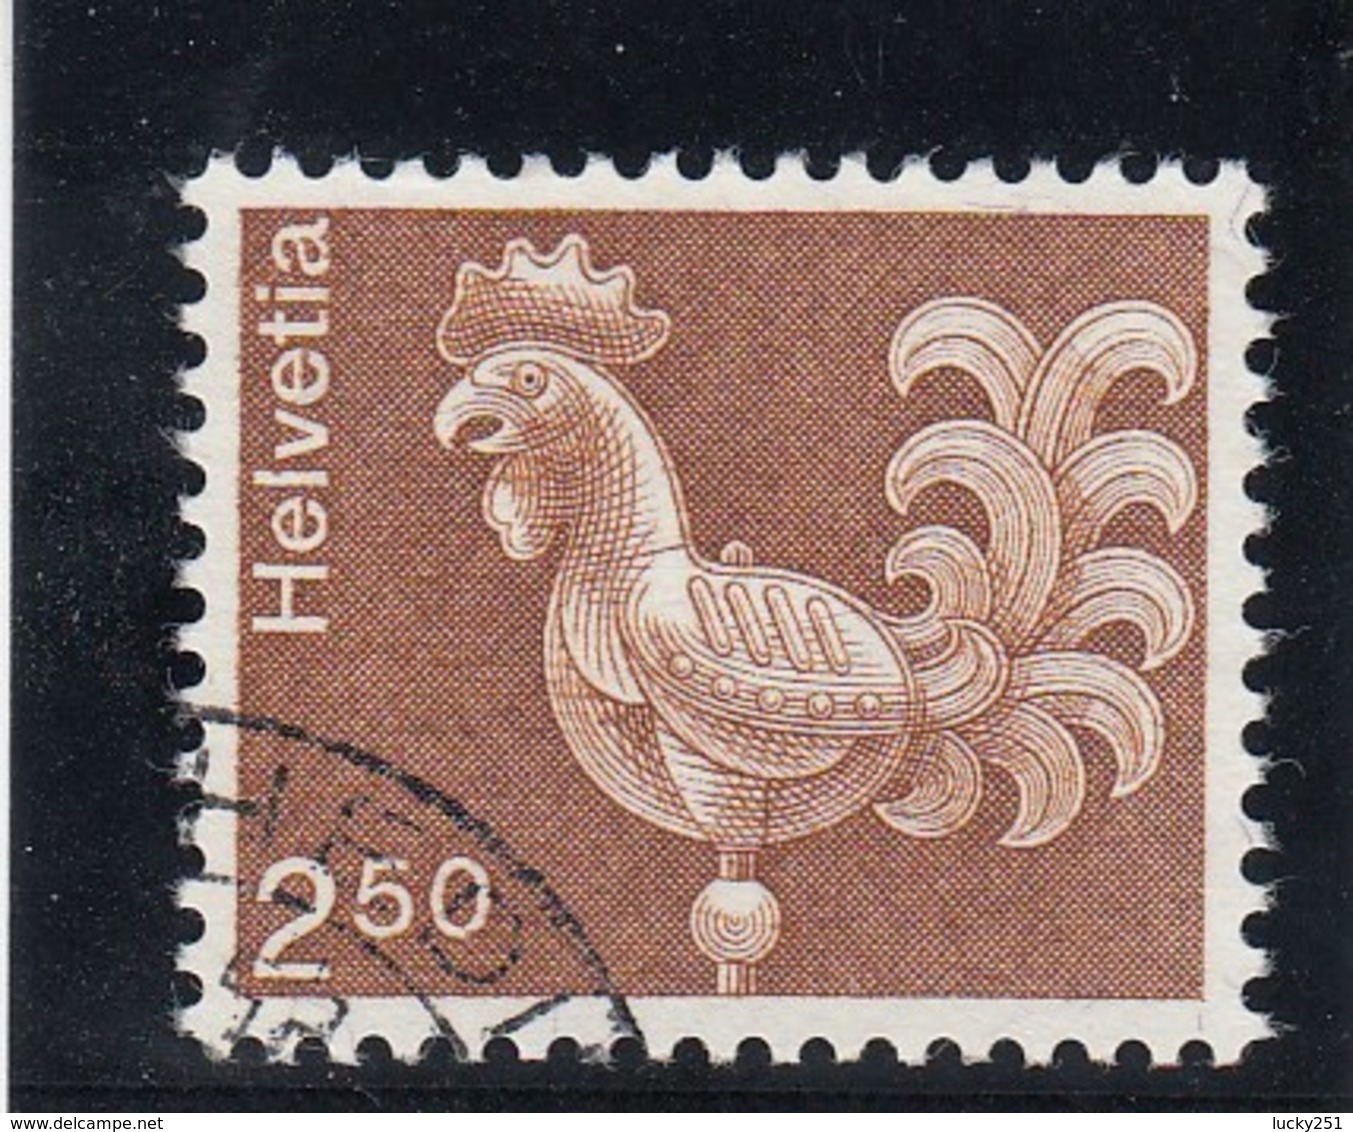 Suisse - 1975 - Oblit. - N° YT 991 - Coq - Oblitérés